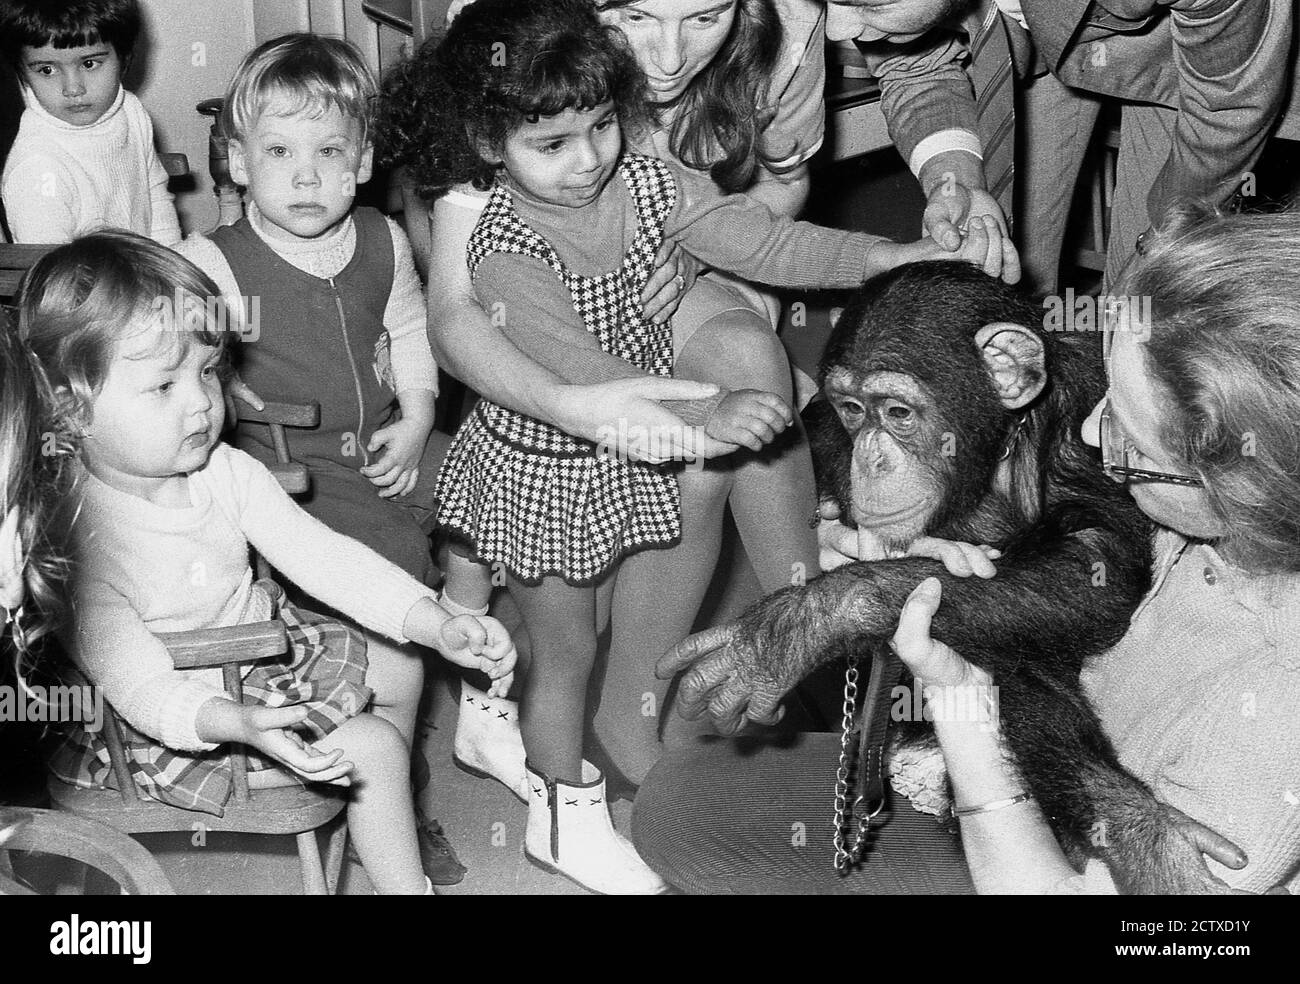 1970, historisch, ein Schimpansen, der die Kinderabteilung eines Krankenhauses im Südosten Londons besucht. Tiere können ein großer Schub für Kinder sein und Haustiere wie Welpen und Kaninchen werden oft in Schulen genommen, aber Wildtiere,.....nur in den siebziger Jahren wäre dies möglich gewesen. Stockfoto